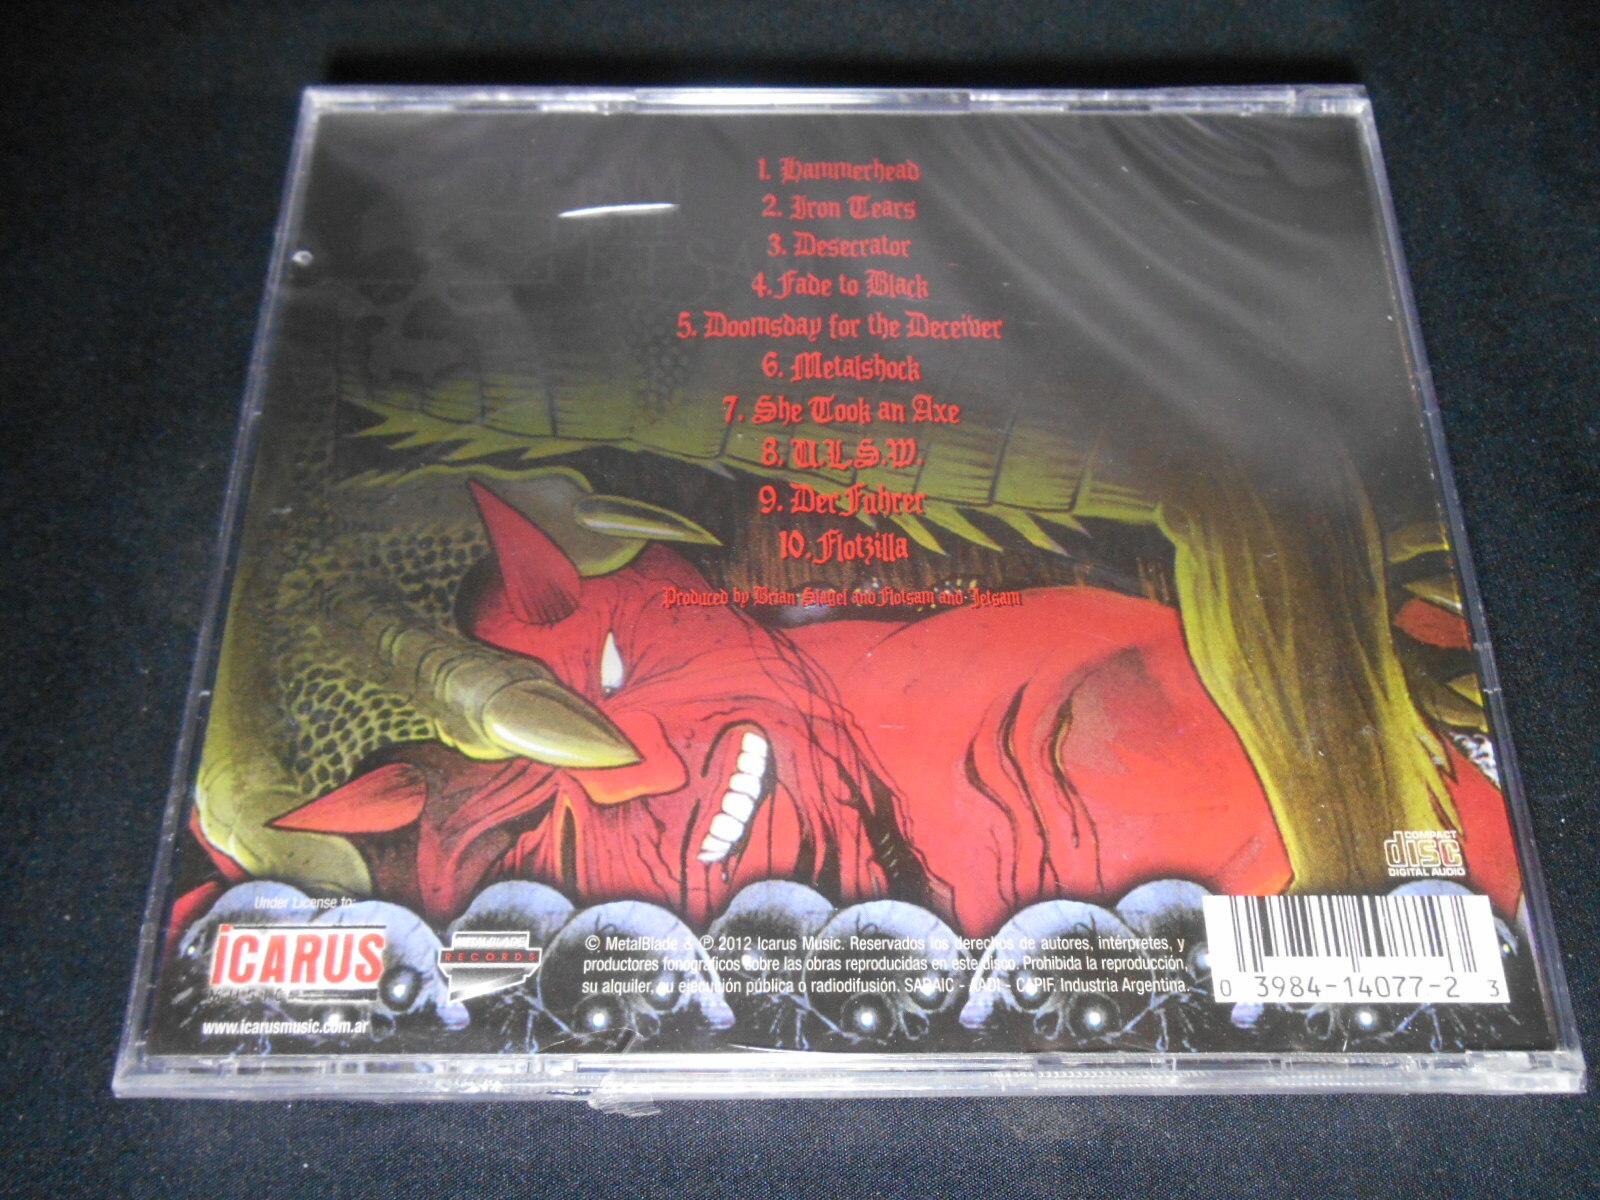 CD - Flotsam and Jetsam - Doomsda for the Deceiver (IMP/Lacrado)